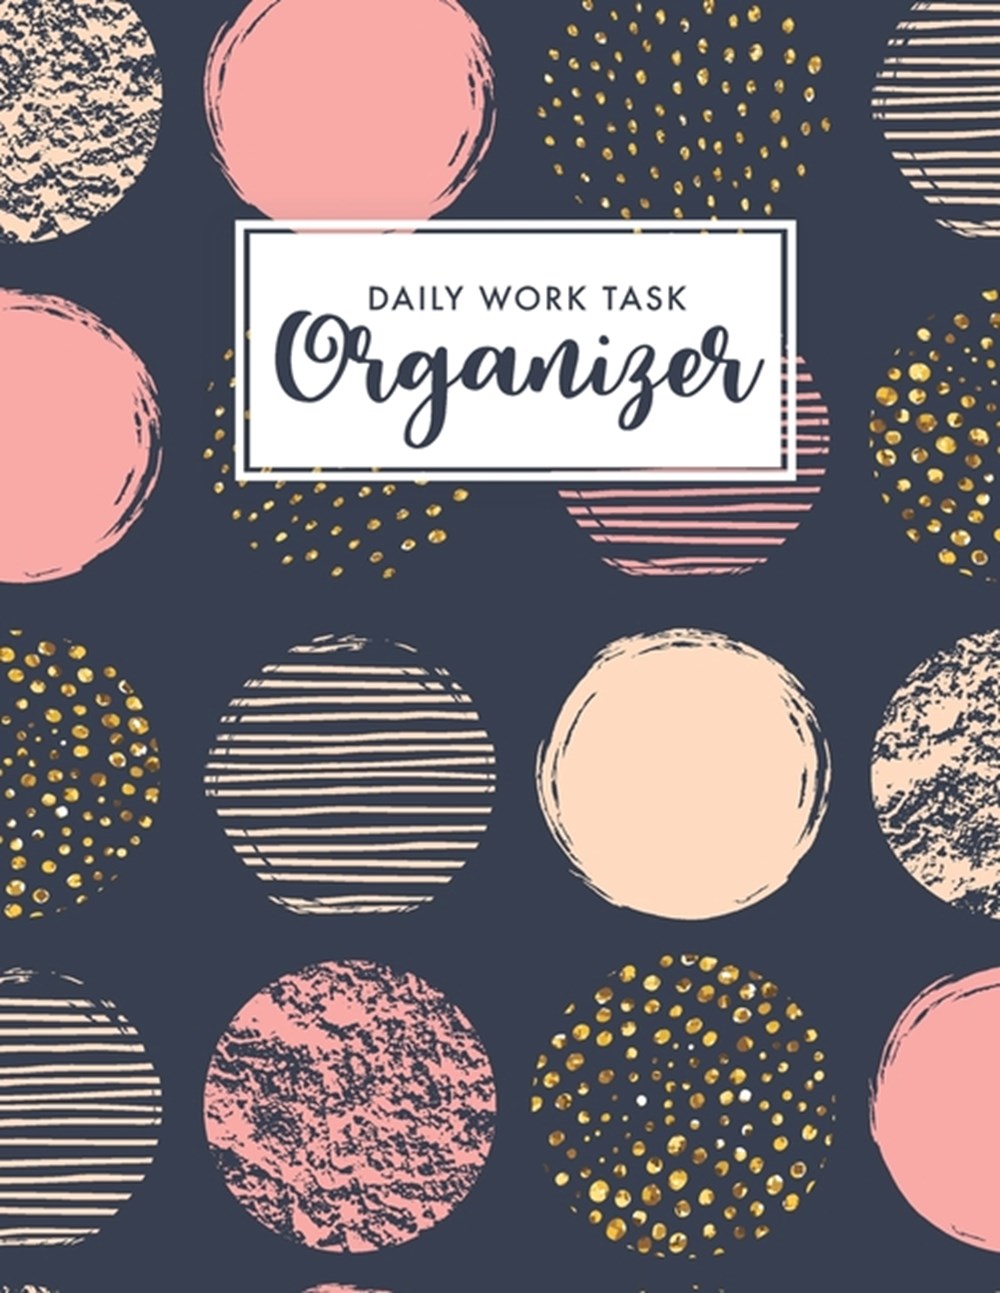 Daily Work Task Organizer Work Day Planner - Organizer Journal Schedule Task - Appointment Book Dail